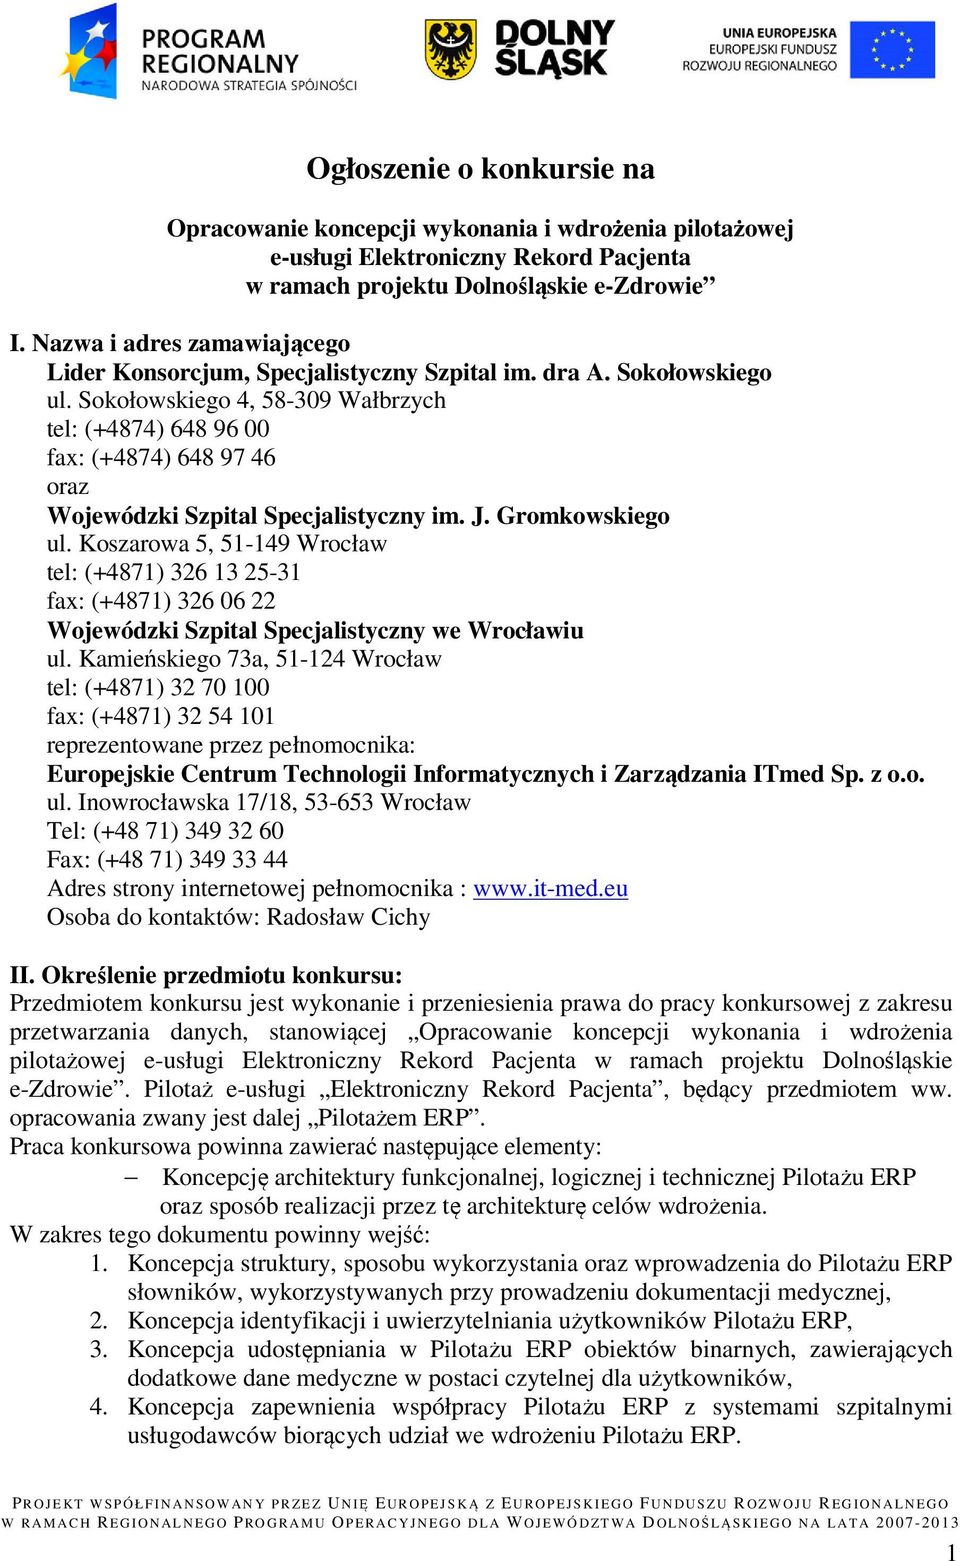 Sokołowskiego 4, 58-309 Wałbrzych tel: (+4874) 648 96 00 fax: (+4874) 648 97 46 oraz Wojewódzki Szpital Specjalistyczny im. J. Gromkowskiego ul.